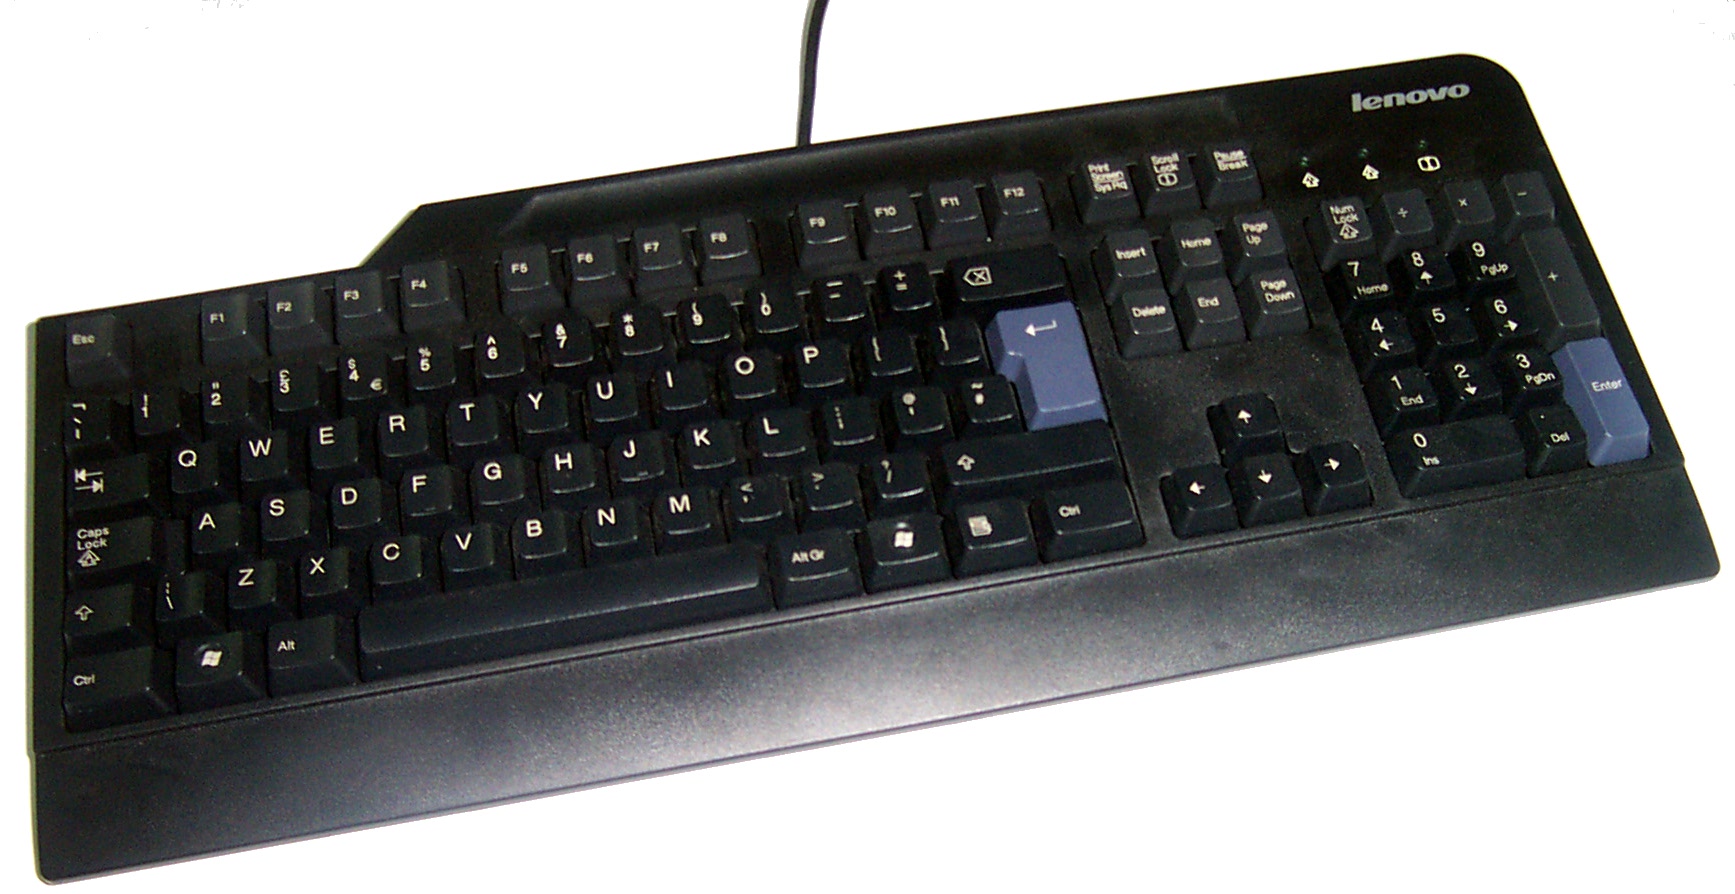 LENOVO 41A5327 PC keyboard, black, USB UK - Kattintson a képre a bezáráshoz